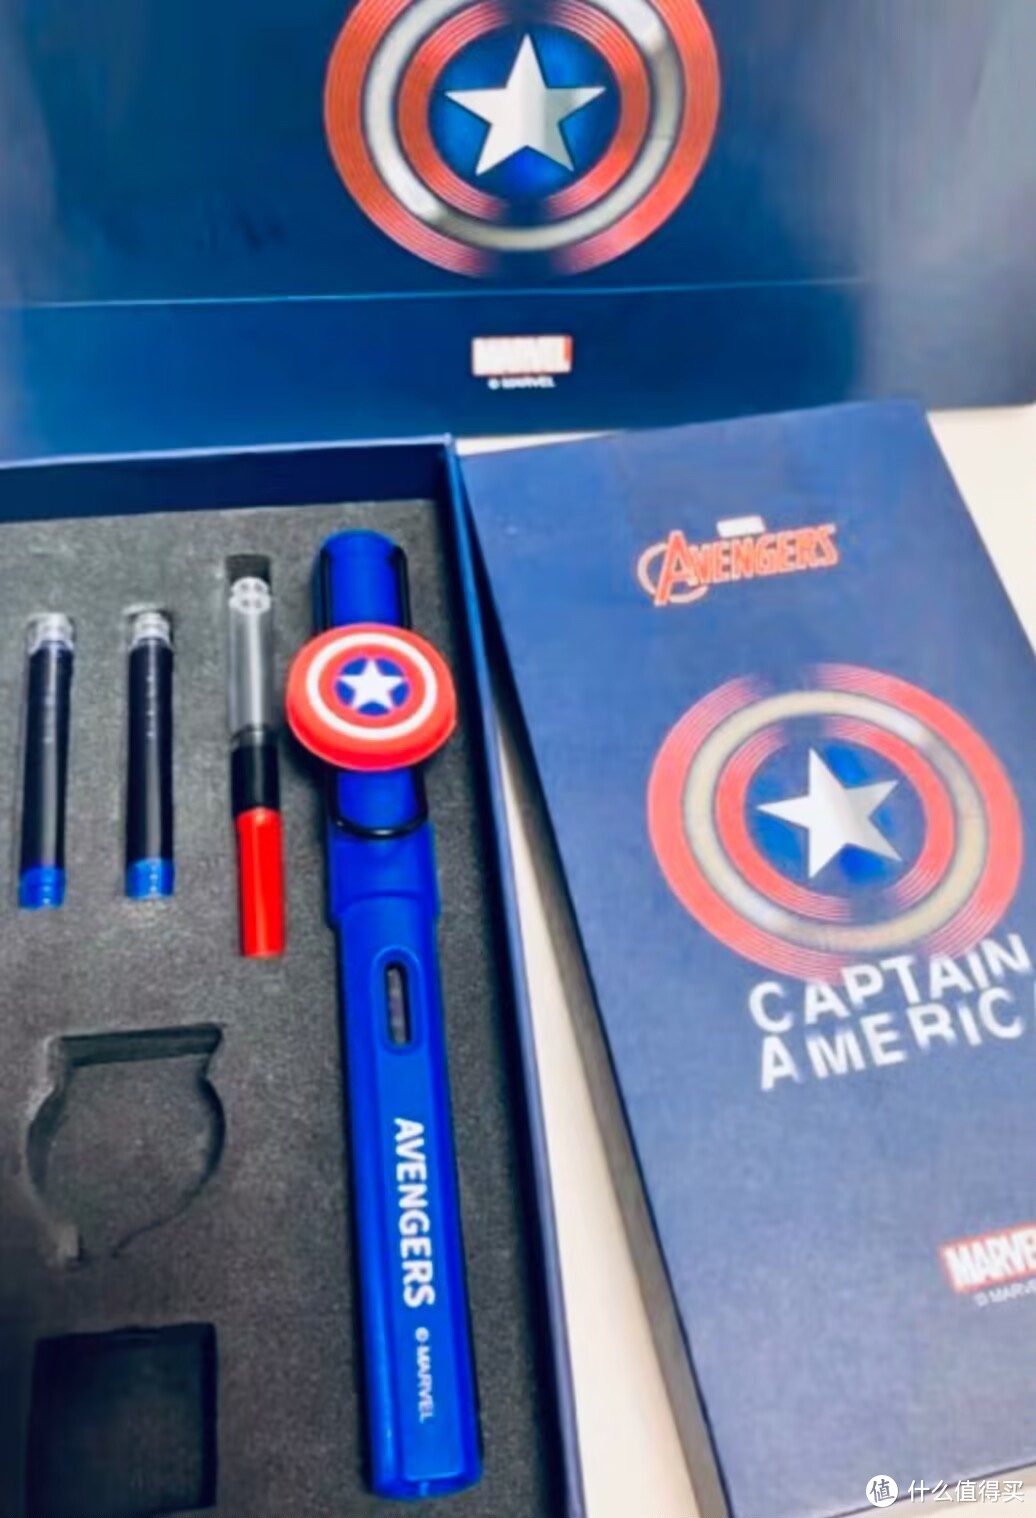 限量版！漫威英雄钢笔礼盒，书写你的超级英雄梦！